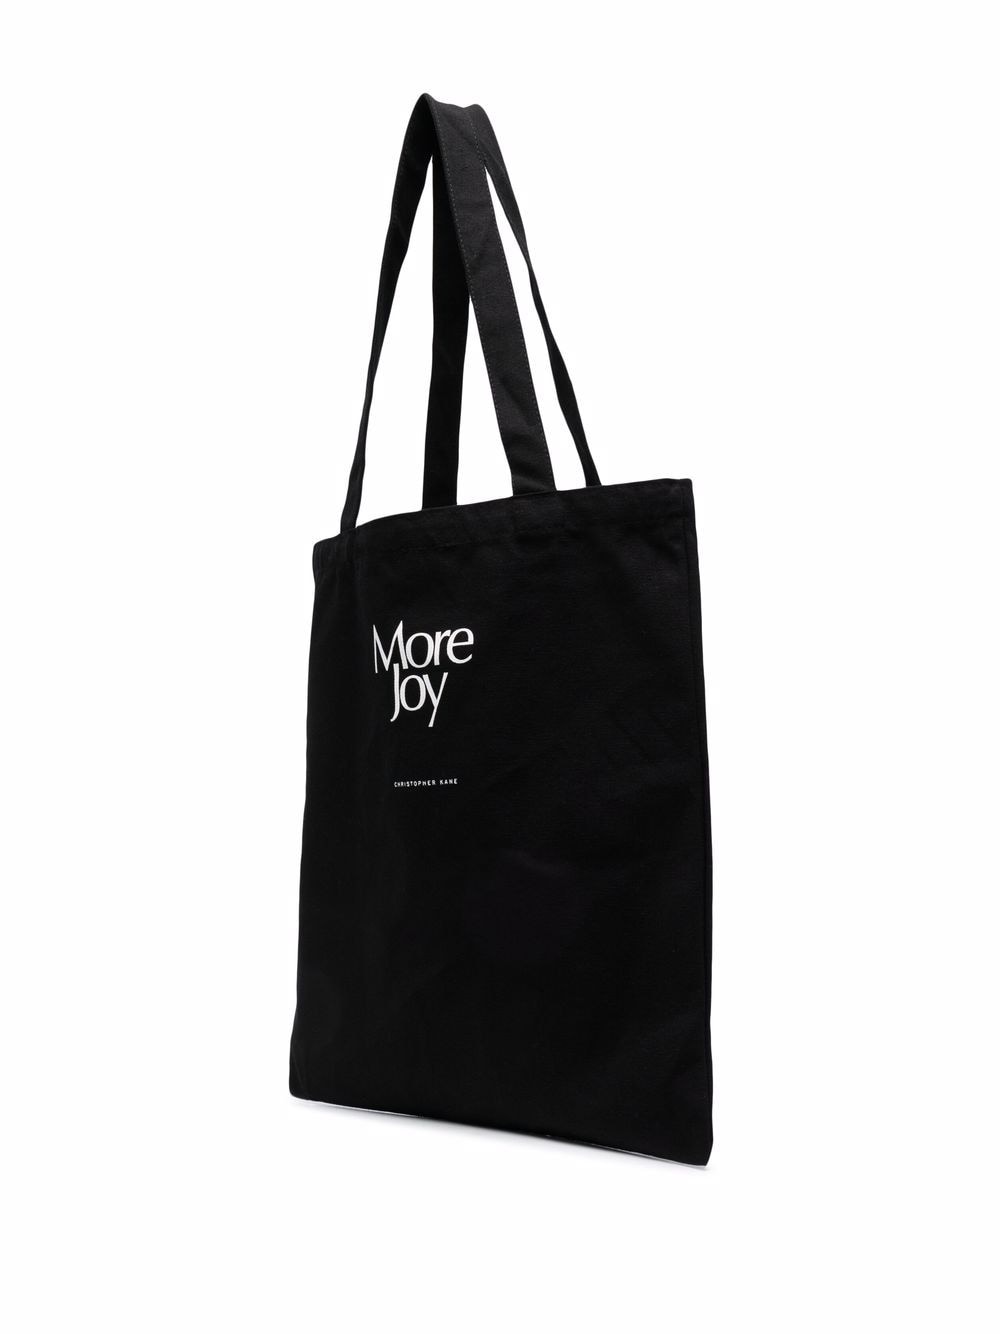 фото More joy сумка-тоут с логотипом